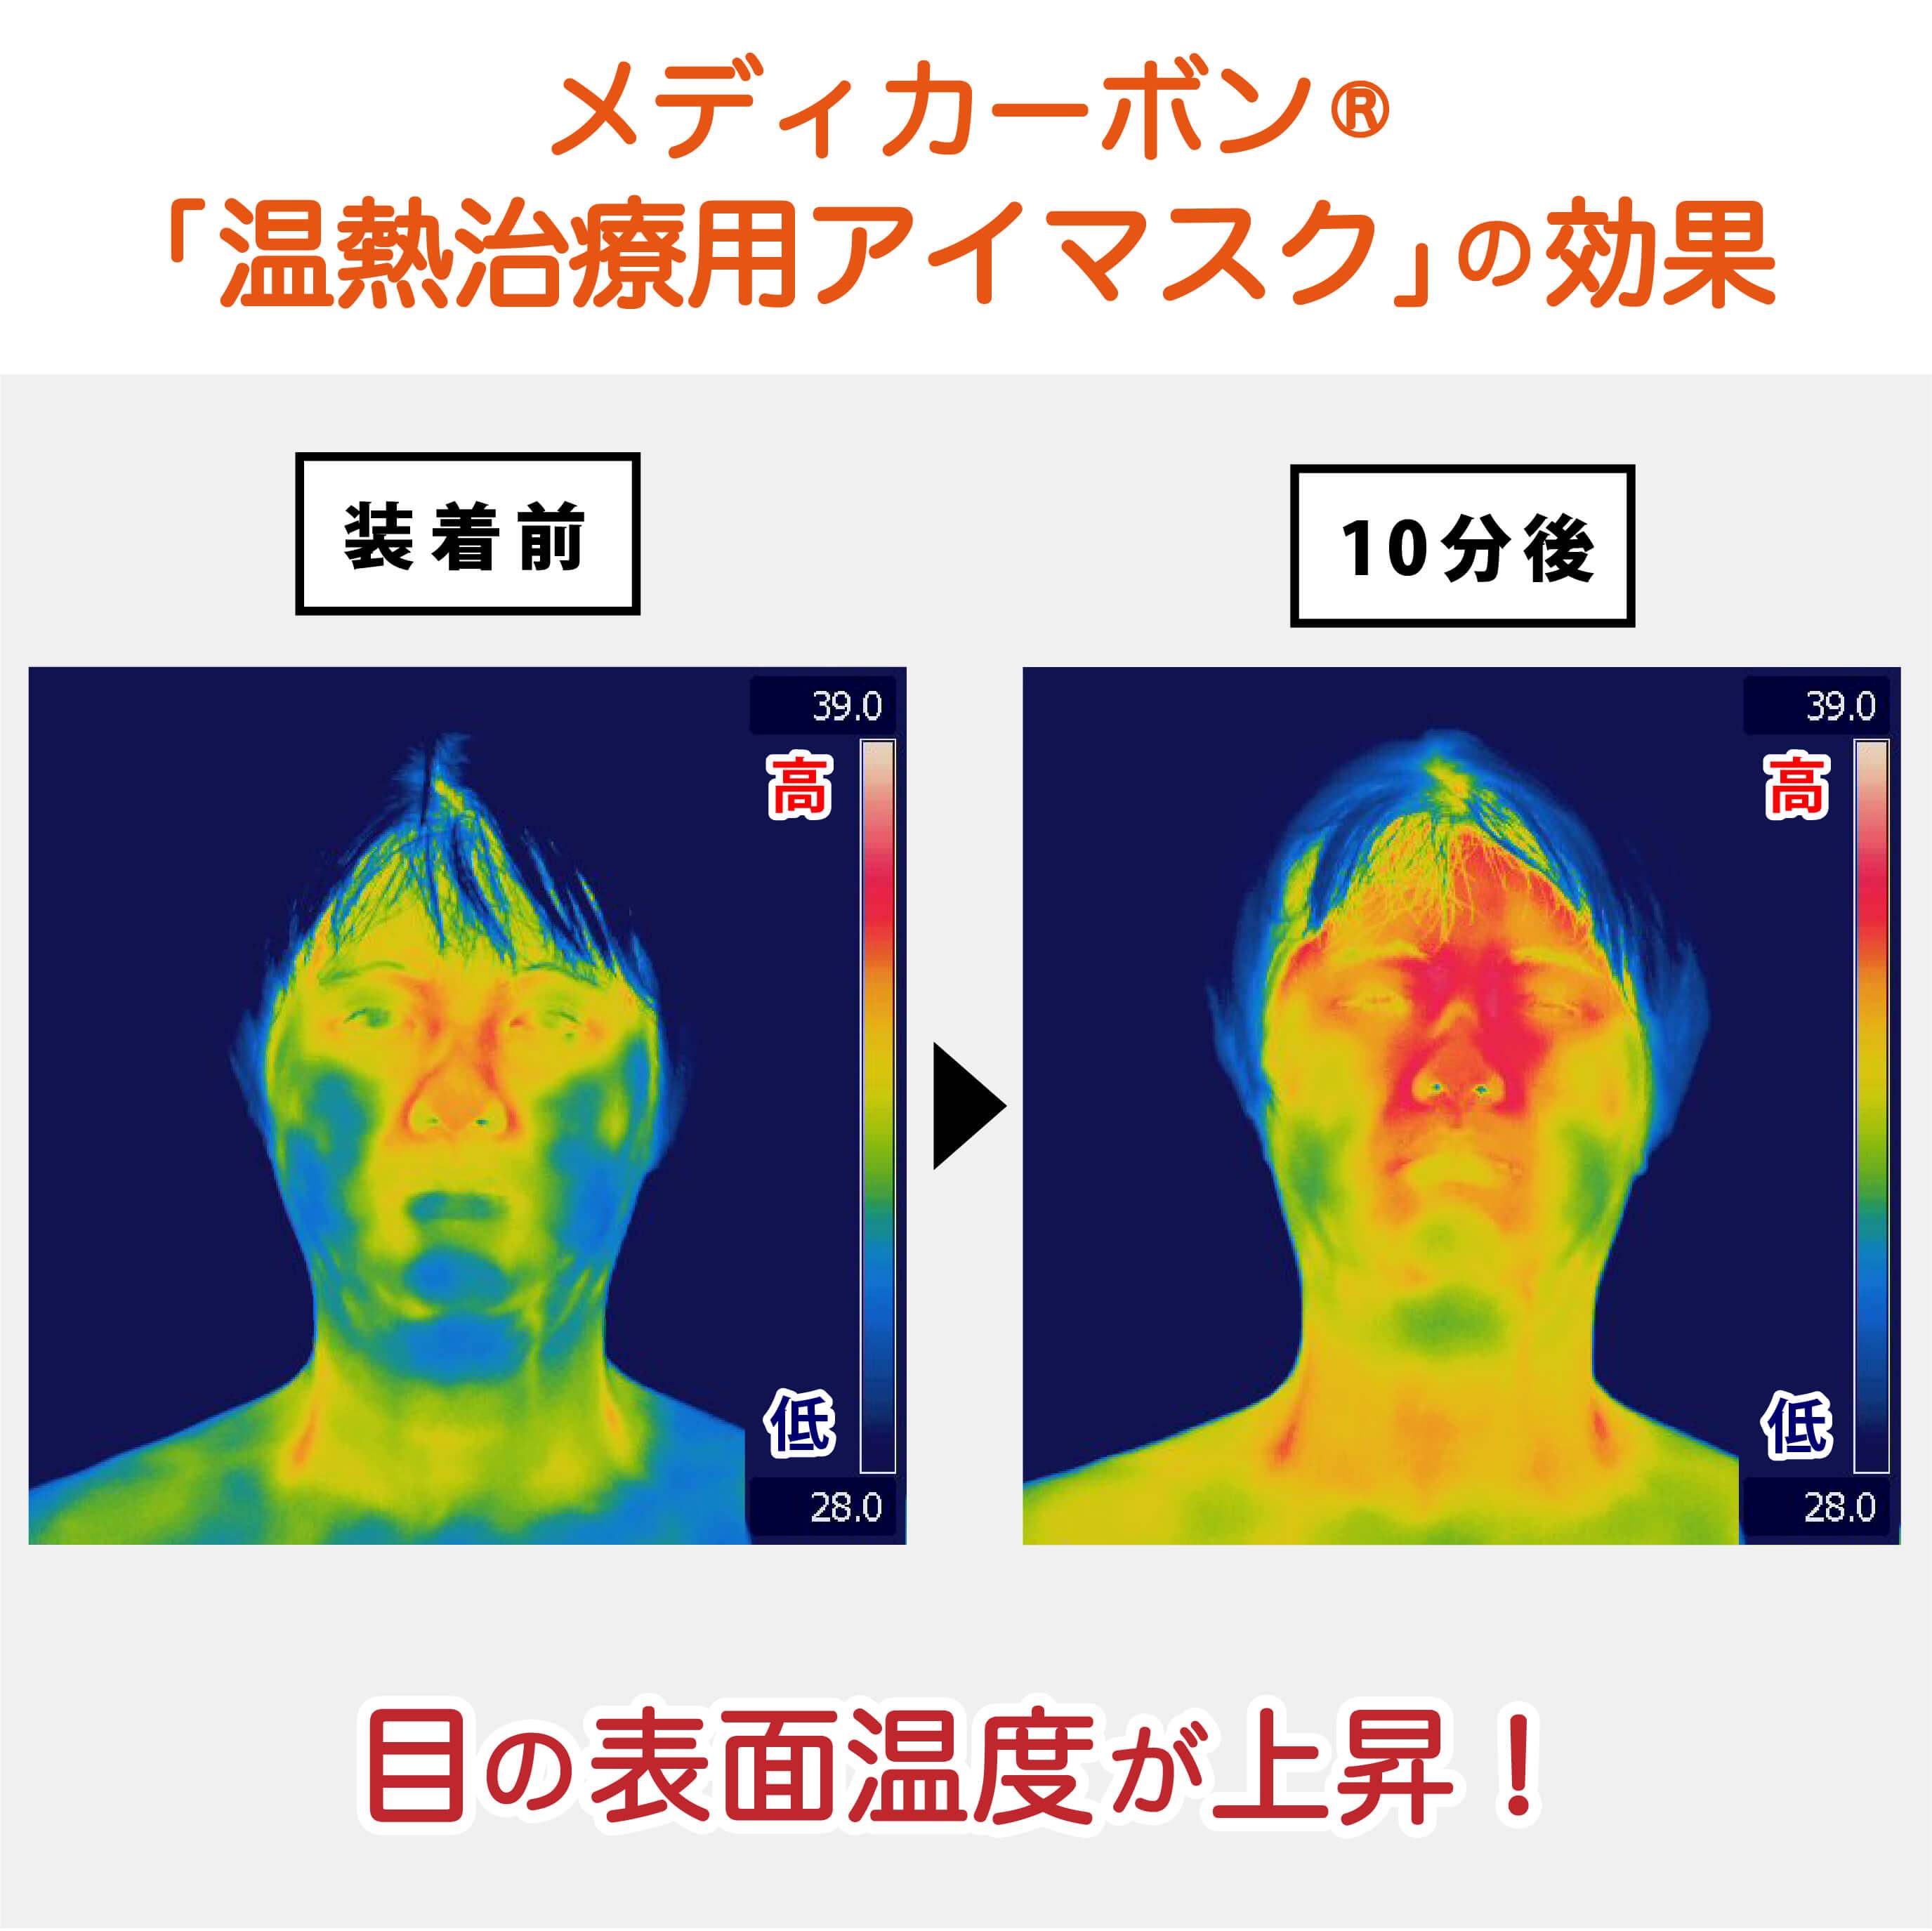 メディカーボン温熱治療用アイマスクの効果の研究結果画像